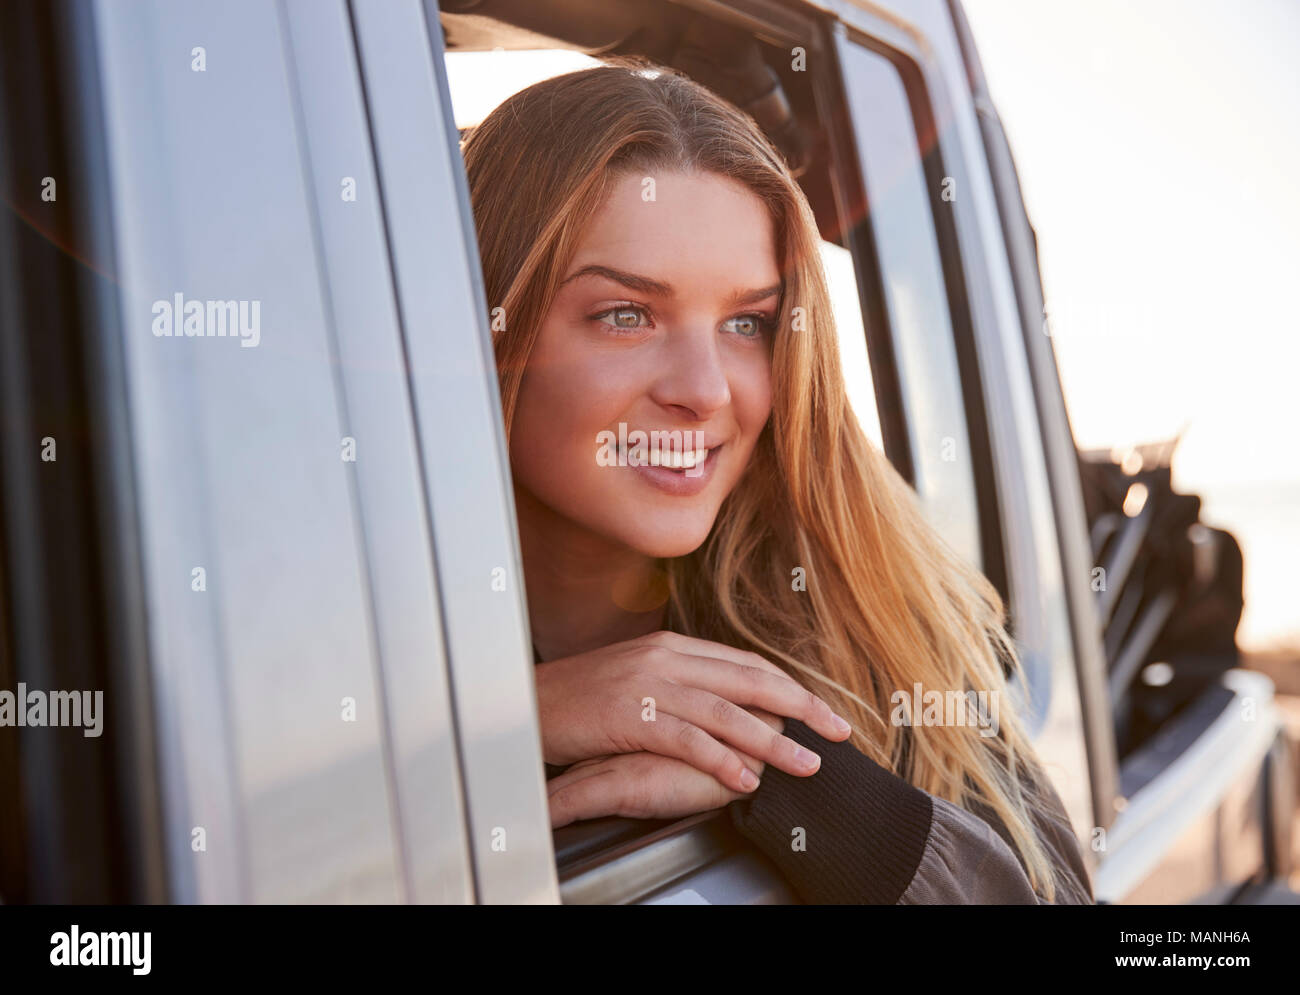 Mujer joven en busca de abrir la ventana del pasajero de un coche Foto de stock